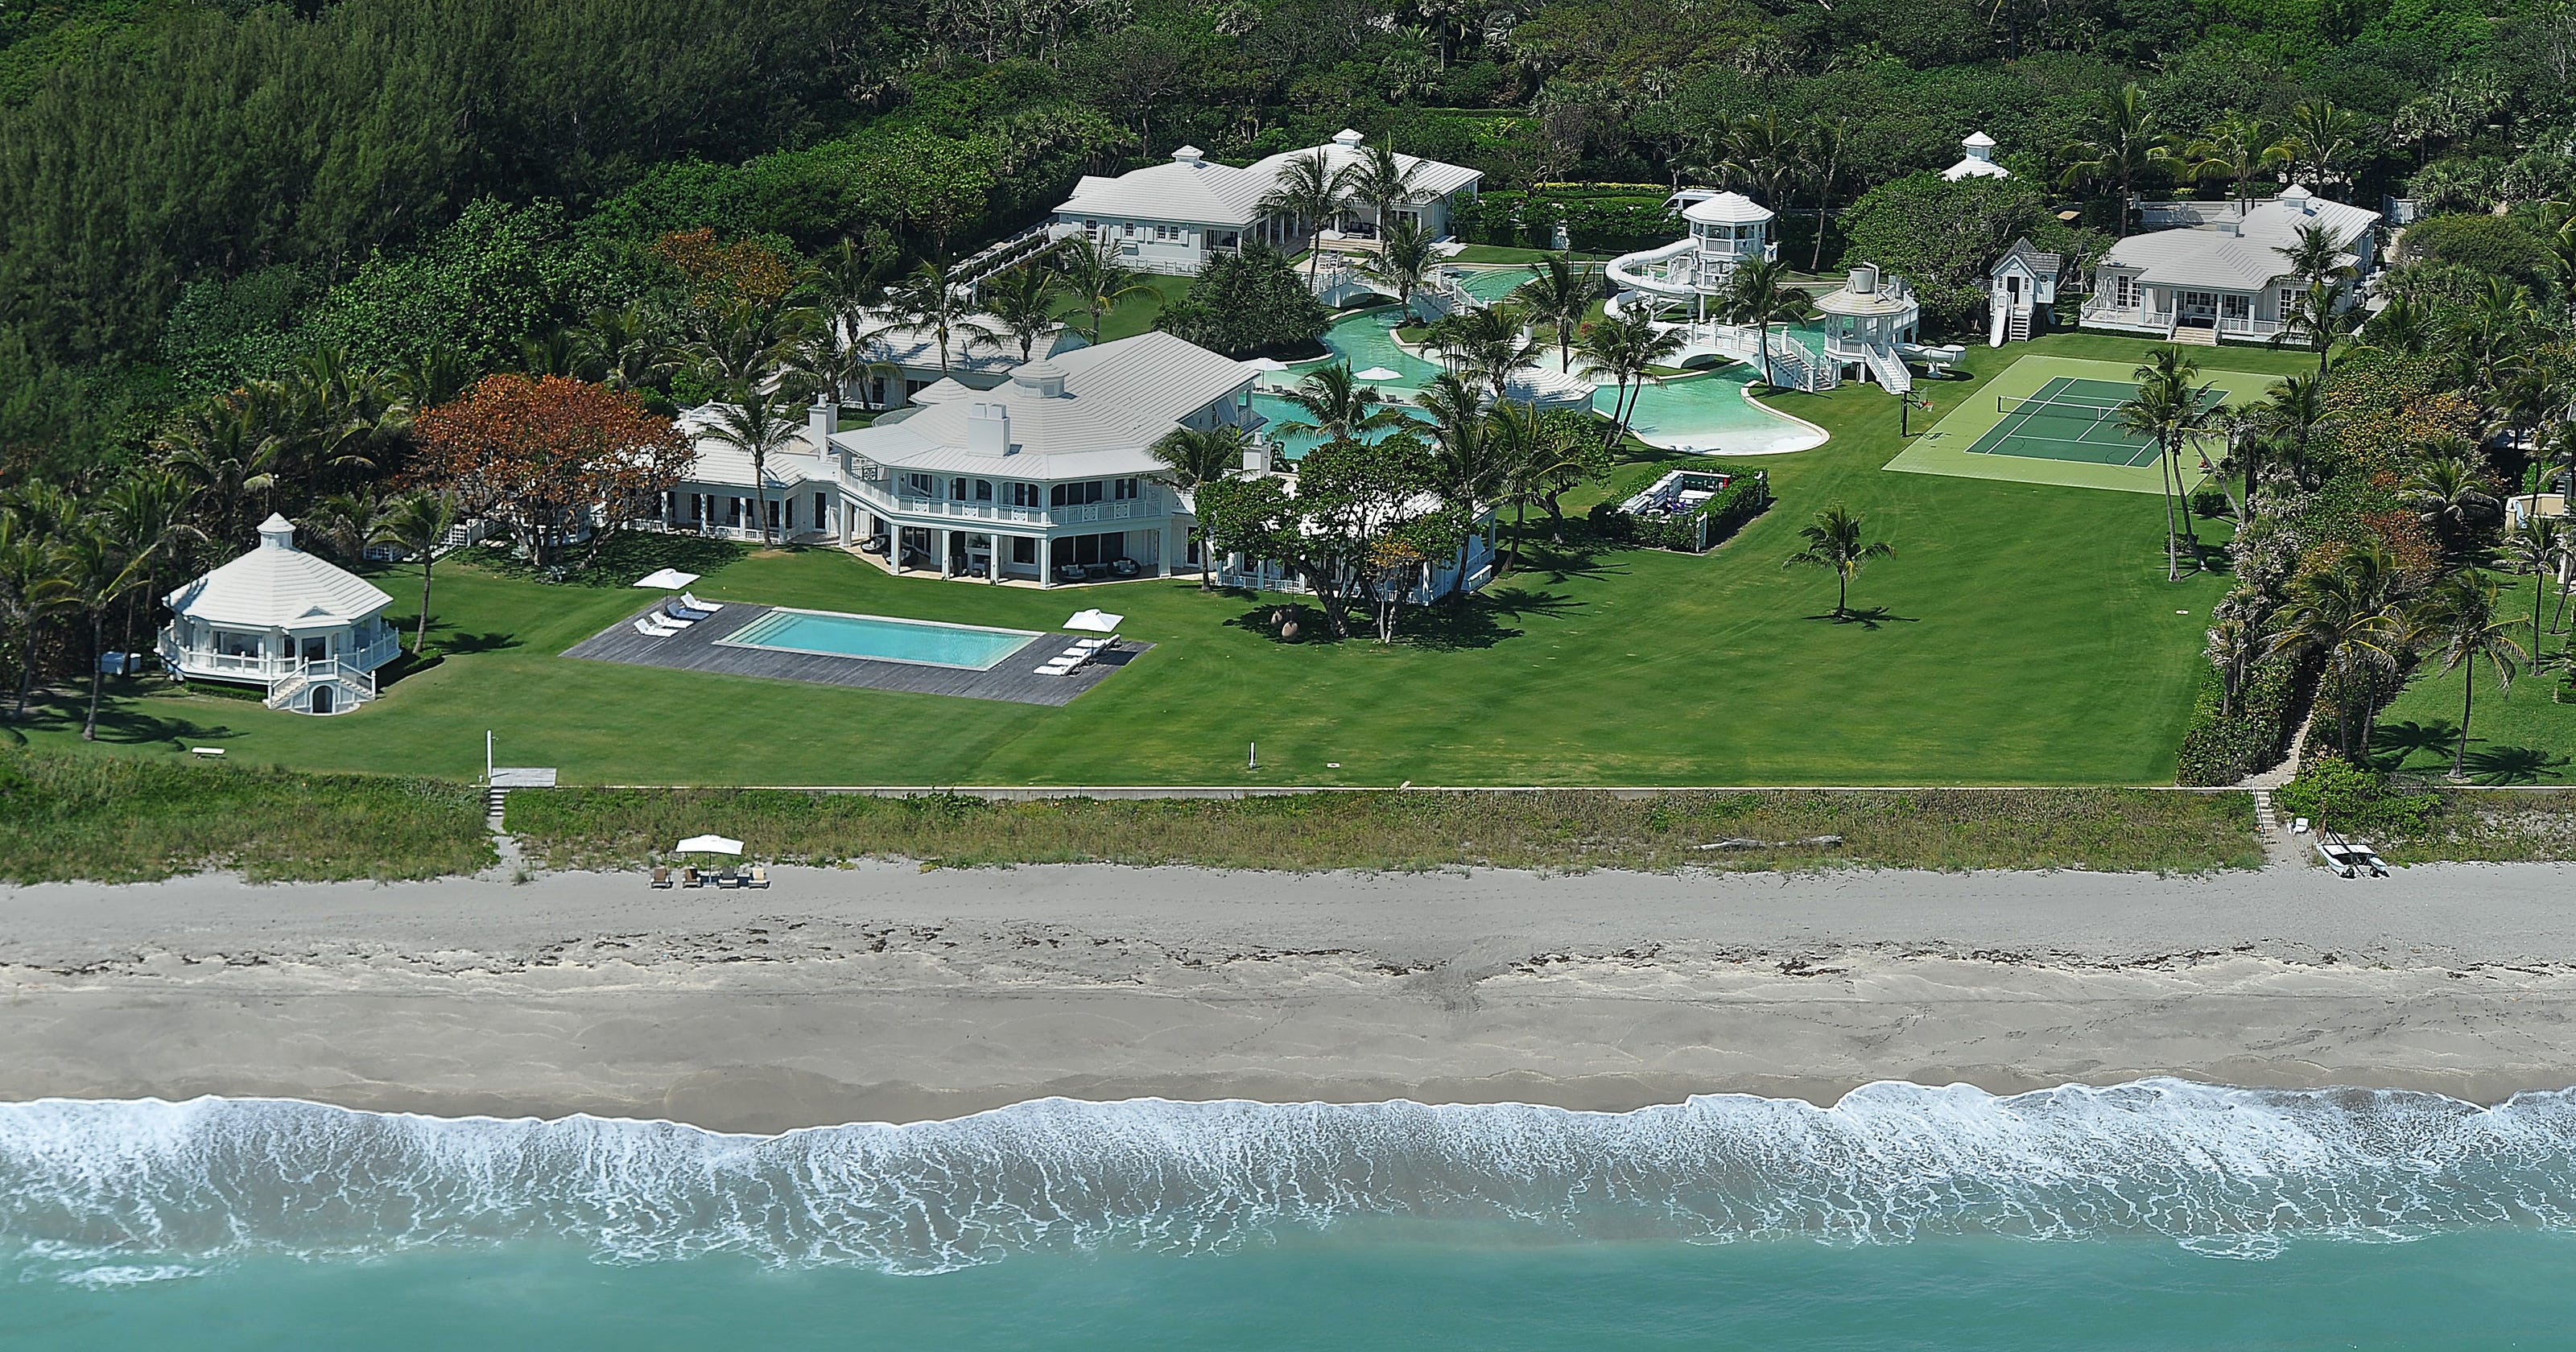 Celine Dion's Jupiter Island home going for half price